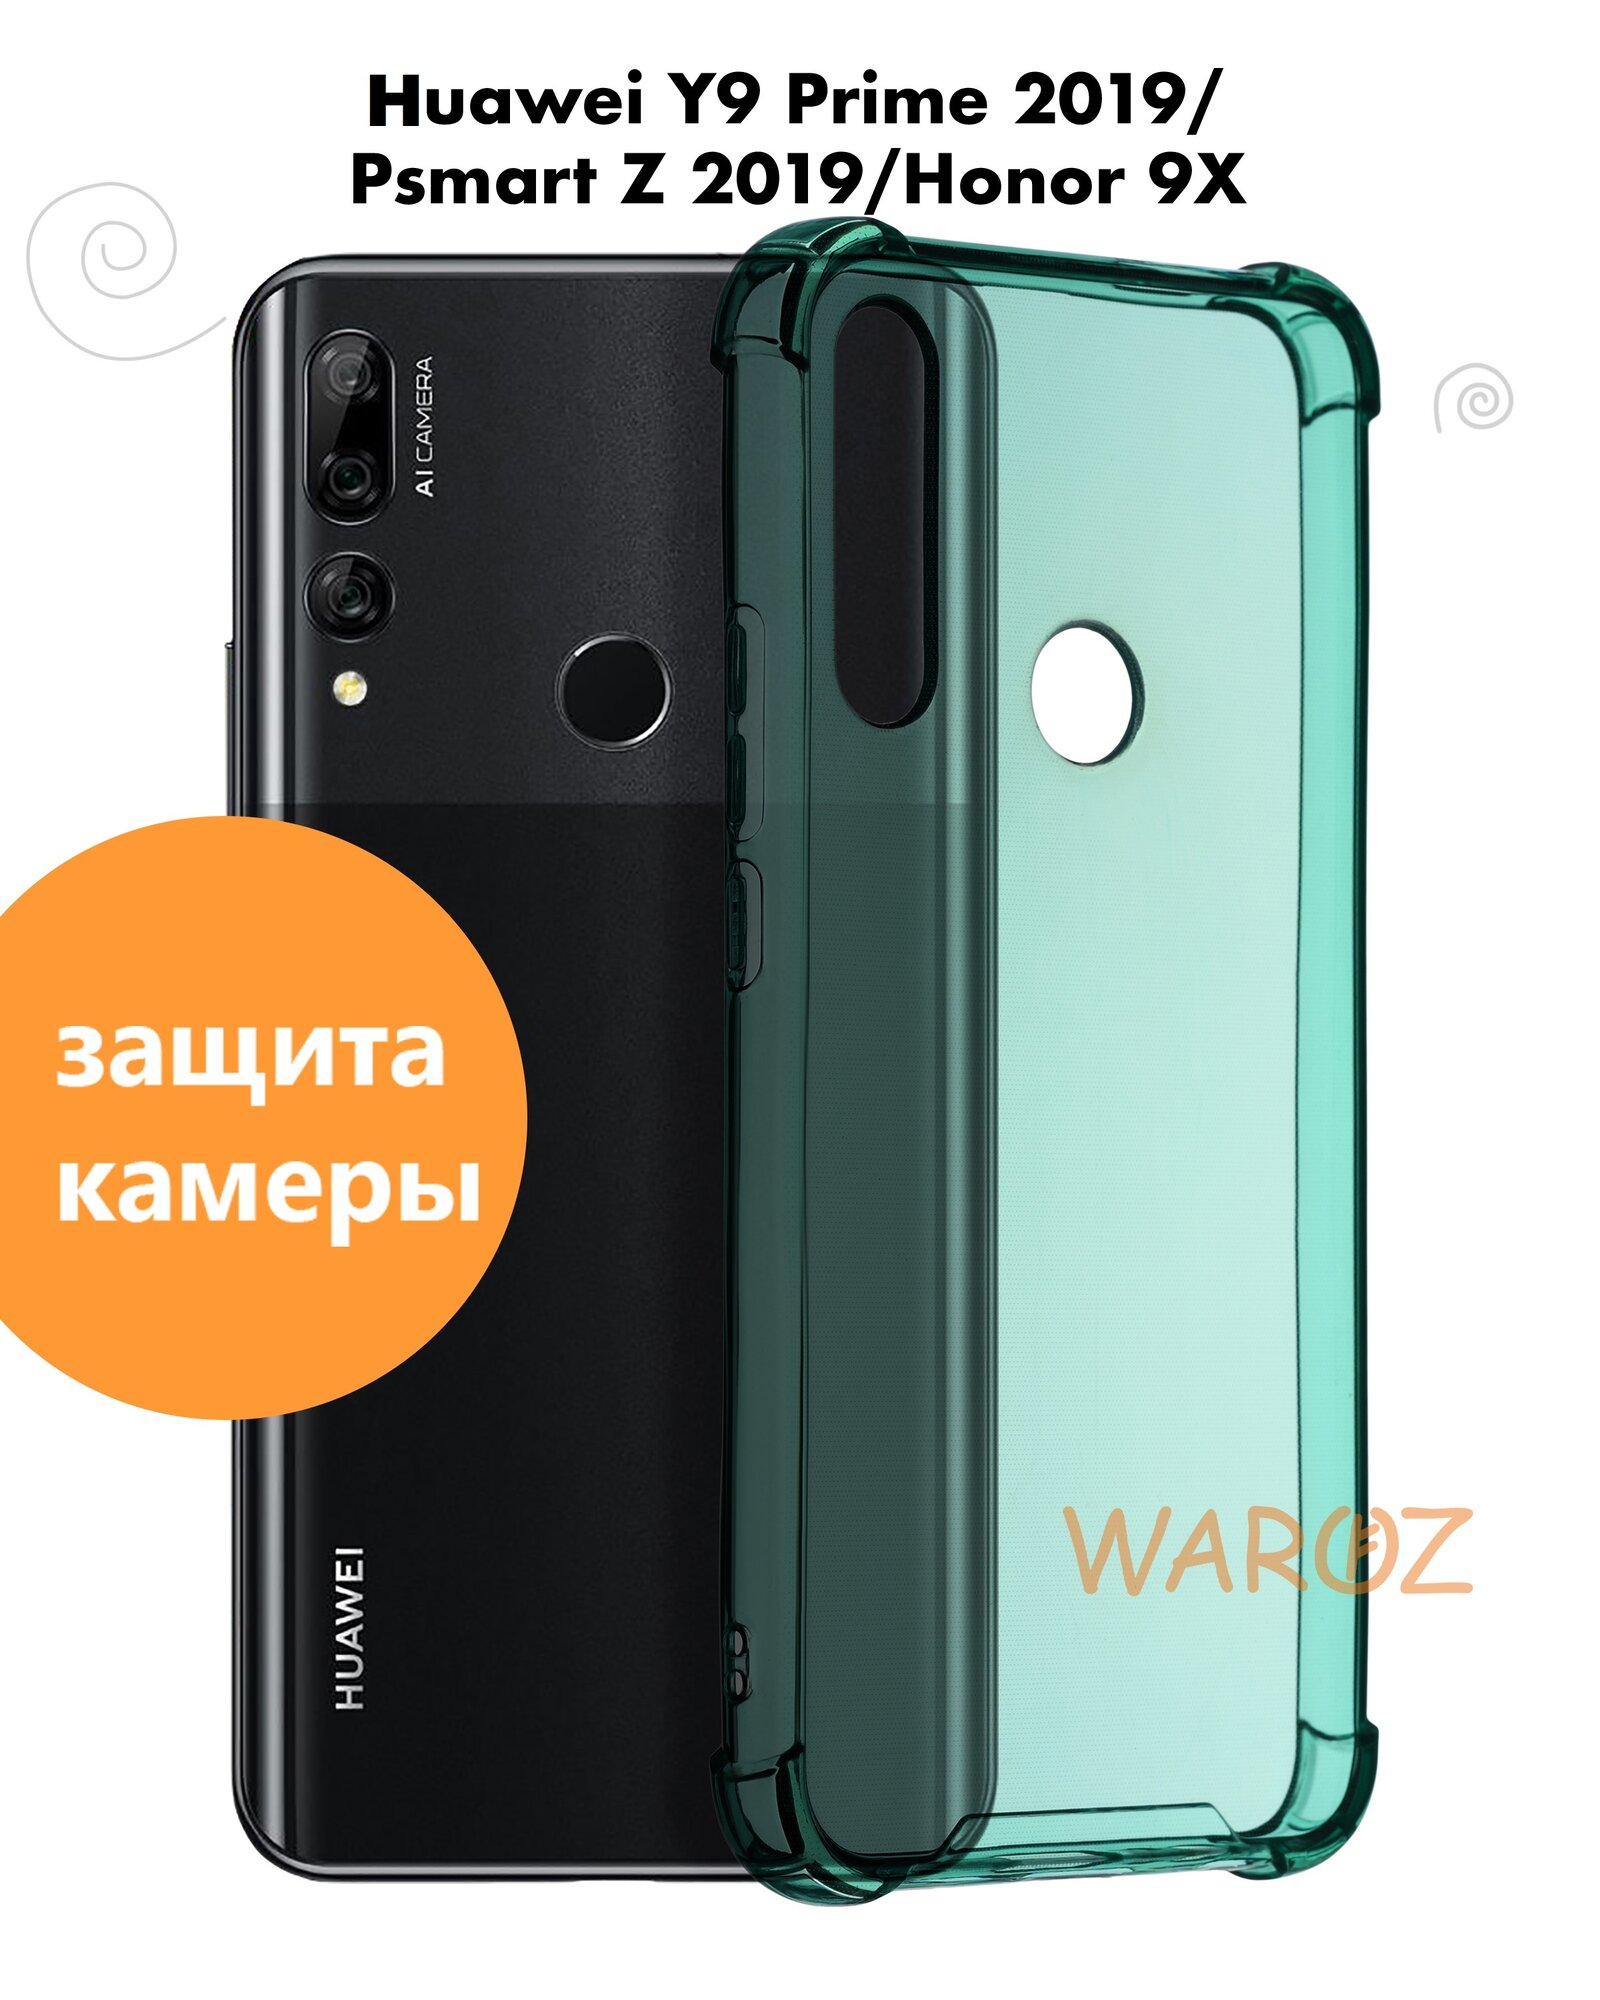 Чехол для смартфона Huawei HONOR 9X / Y9 Prime 2019 / P Smart Z силиконовый противоударный с защитой камеры